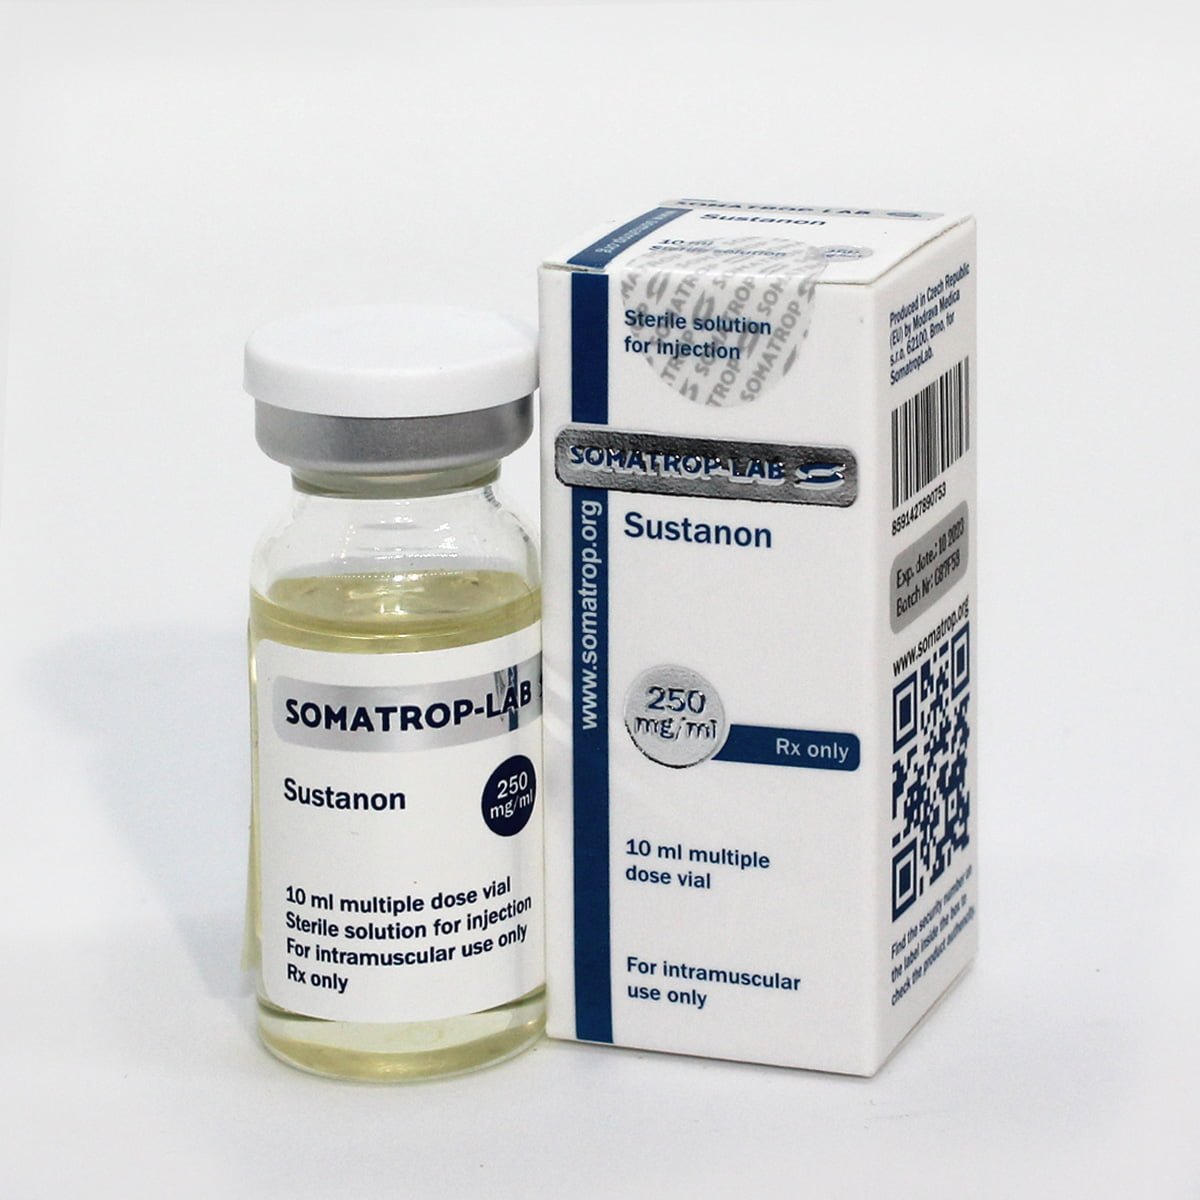 Somatrop-Lab Sustanon